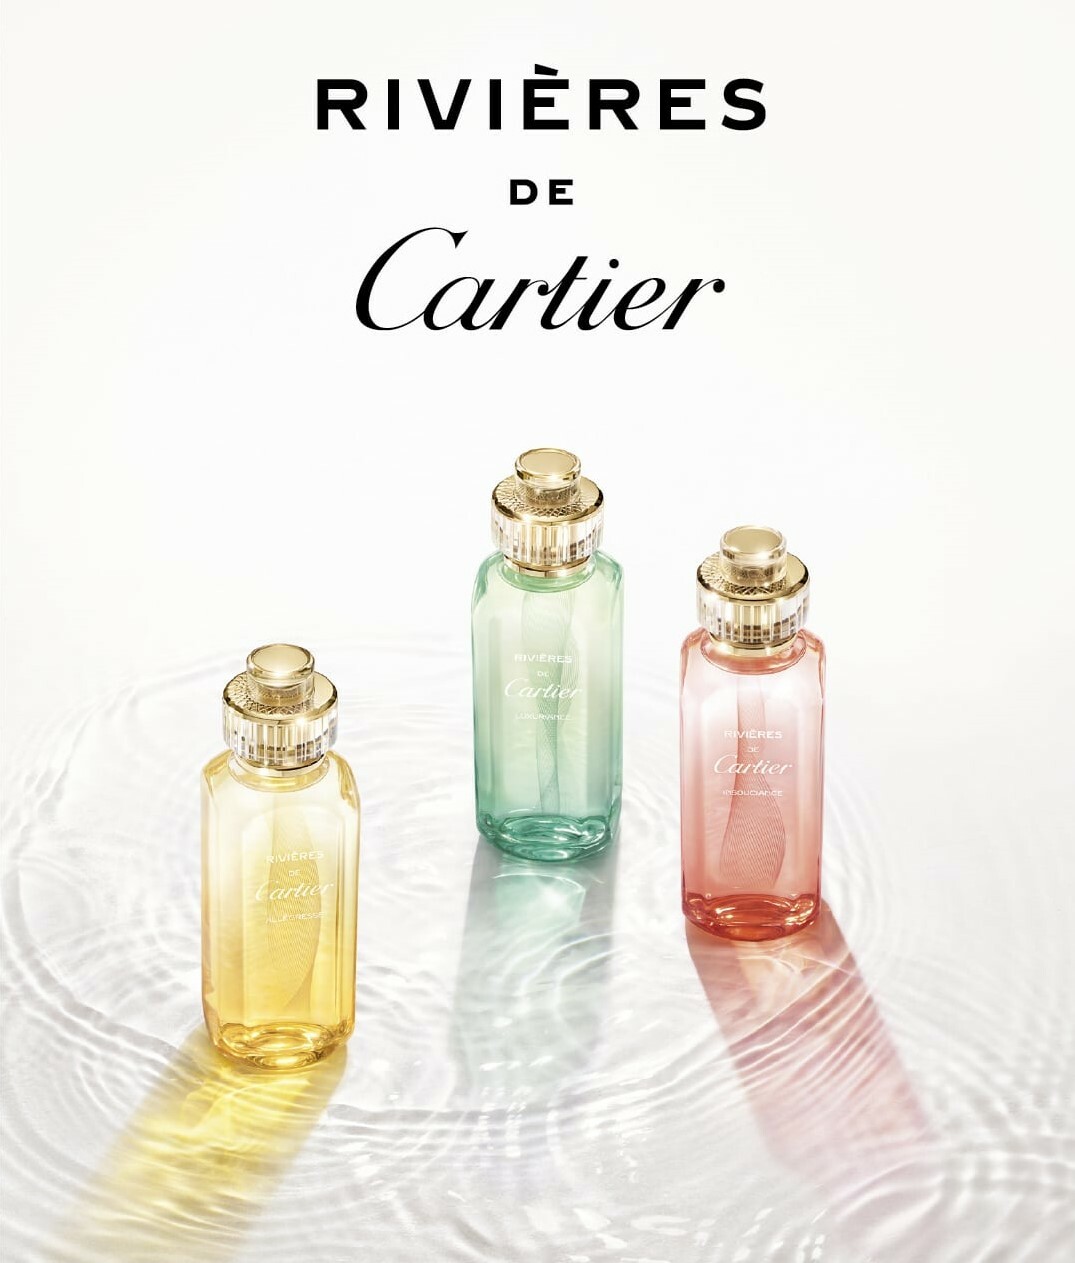 Парфюмерная коллекция Rivieres de Cartier от Cartier